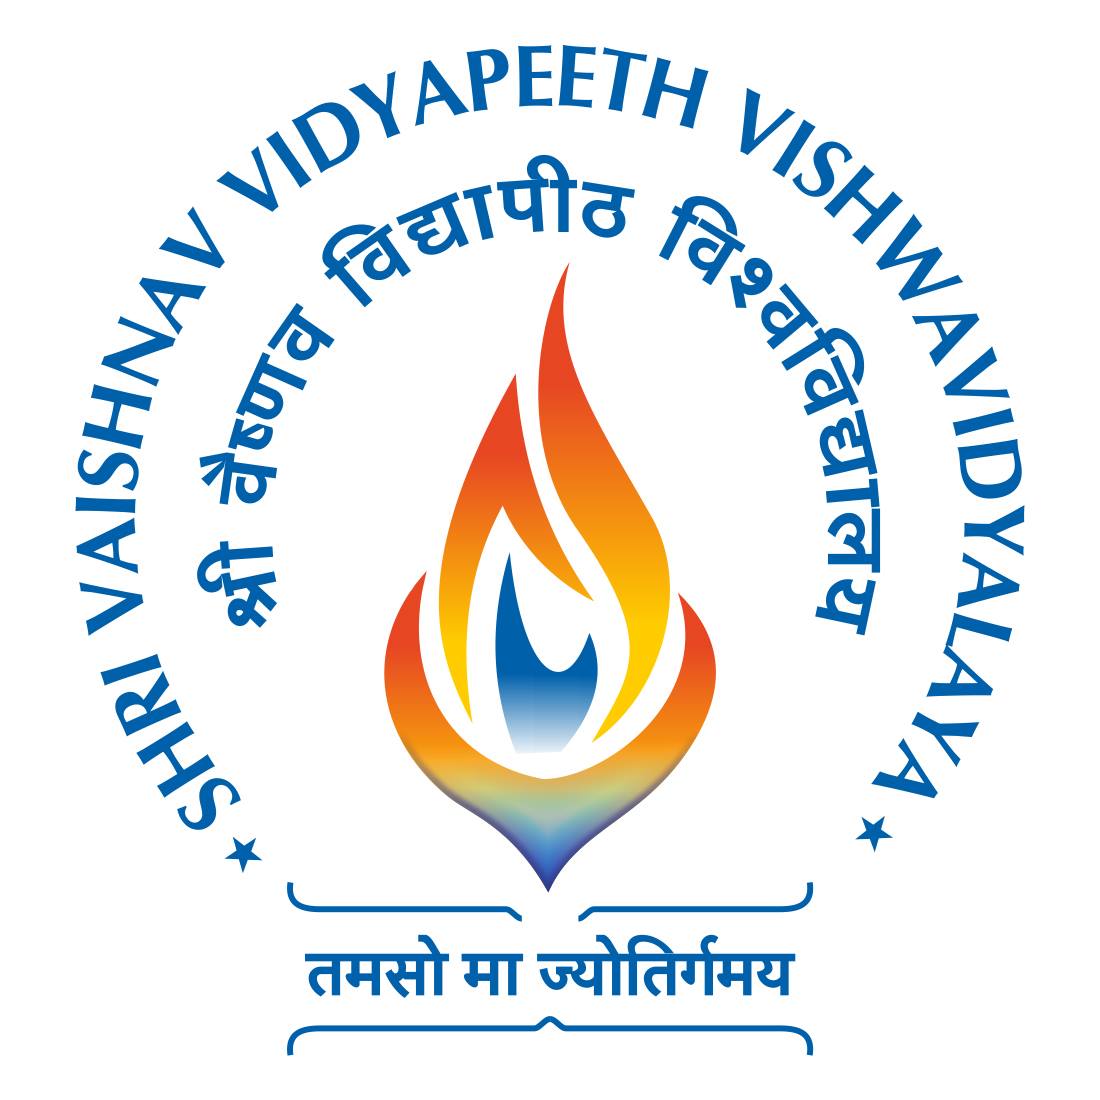 Shri Vaishnav Institute of Technology and Science (SVITS), Indore